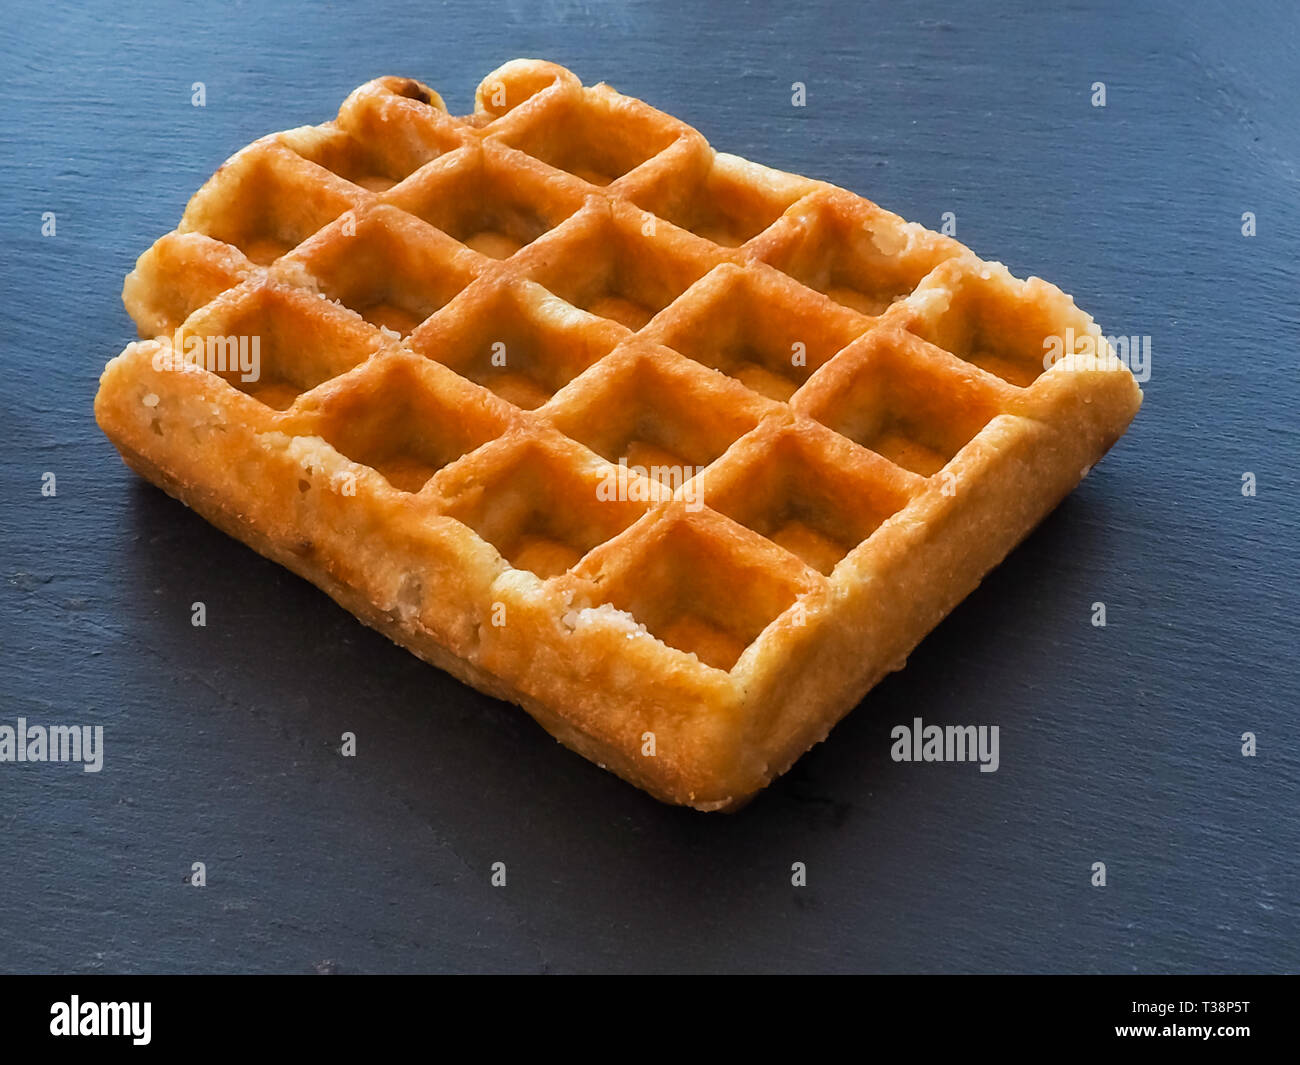 A Belgian waffle on a slate plate Stock Photo